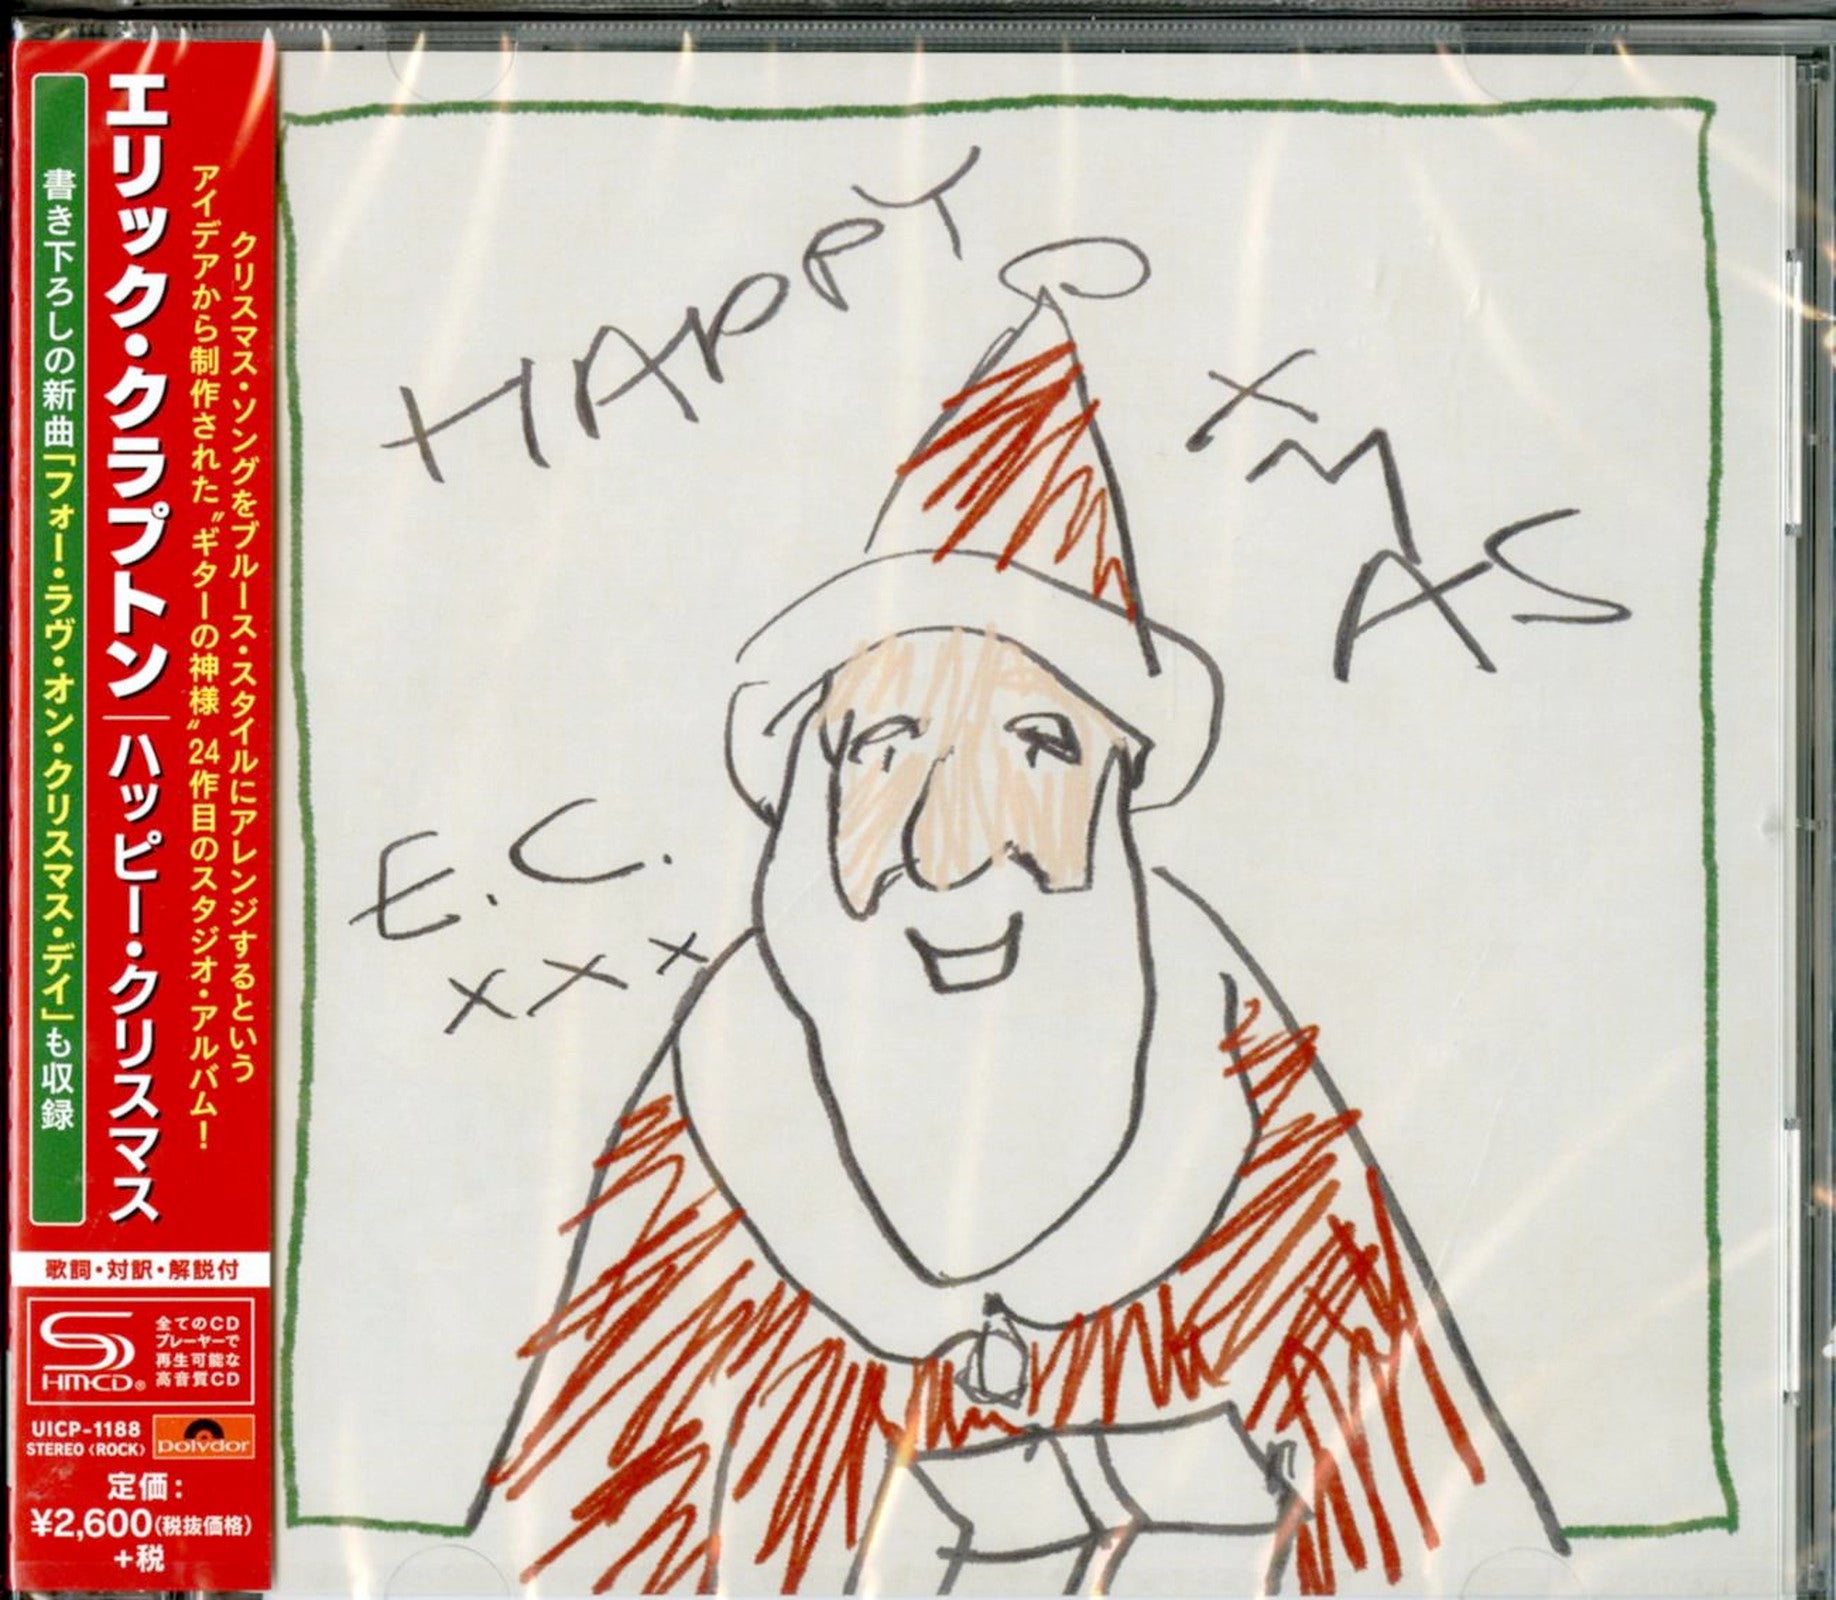 Eric Clapton - Happy - Japan - CDs Vinyl Store